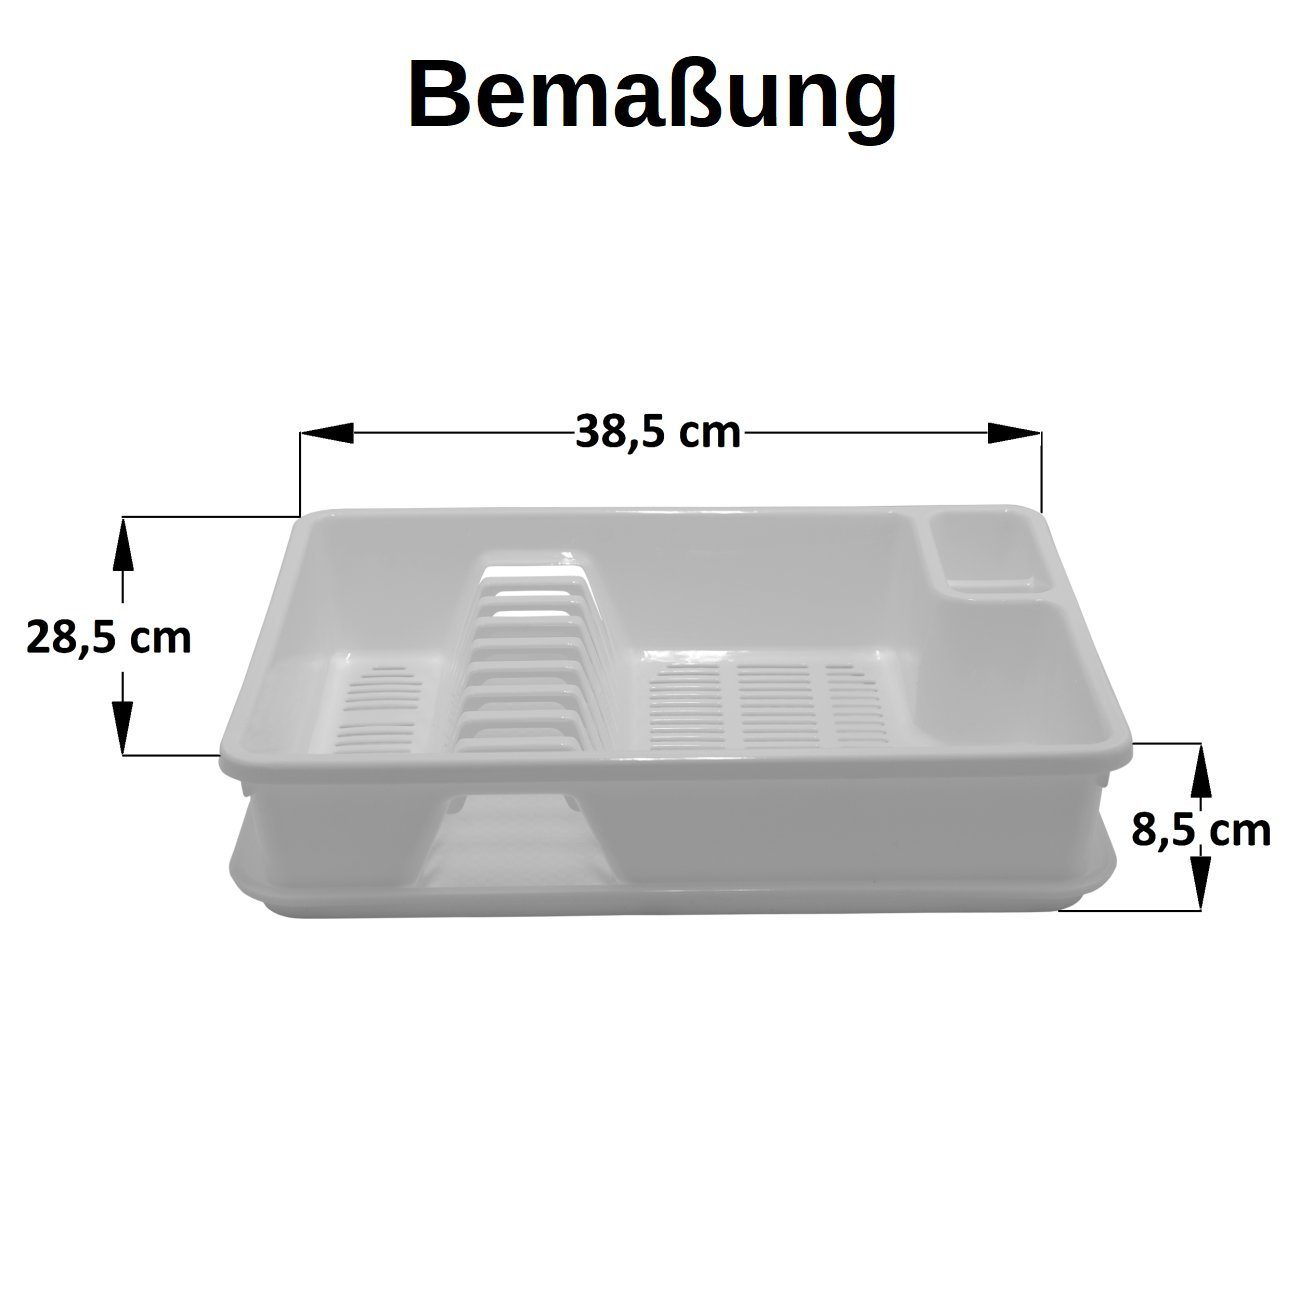 Engelland BPA-frei Abtropfgestell, 9 Geschirrständer spülmaschinengeeignet, mit Sand inkl. zu Besteck, bis Wanne, Teller Abtropfgitter für